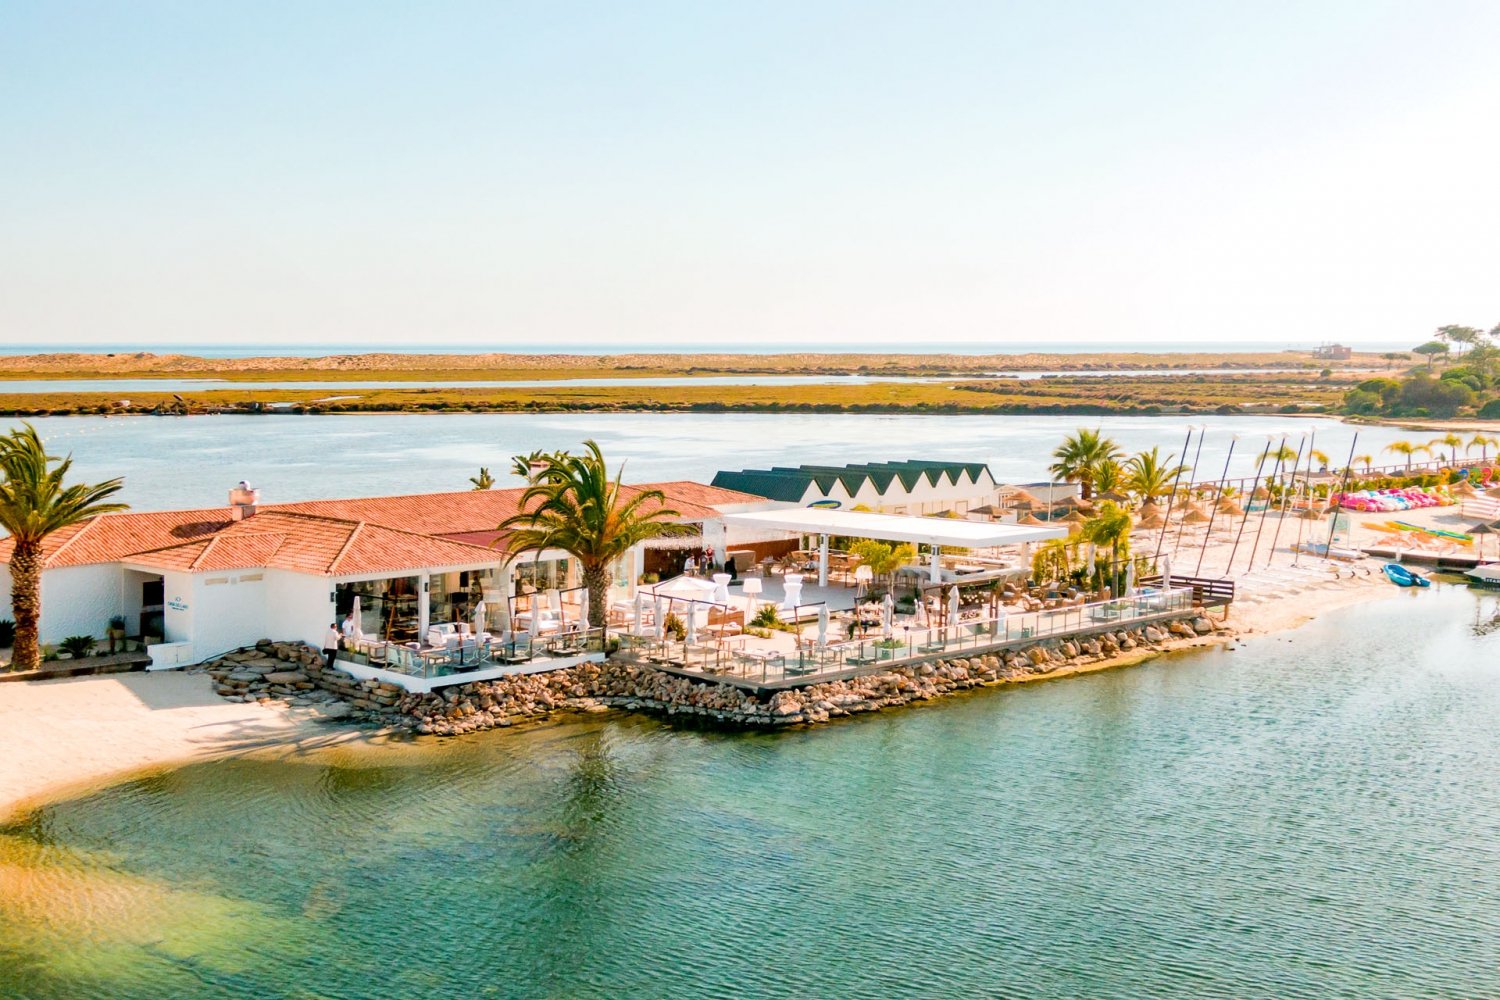 Casa do Lago Restaurant in Algarve